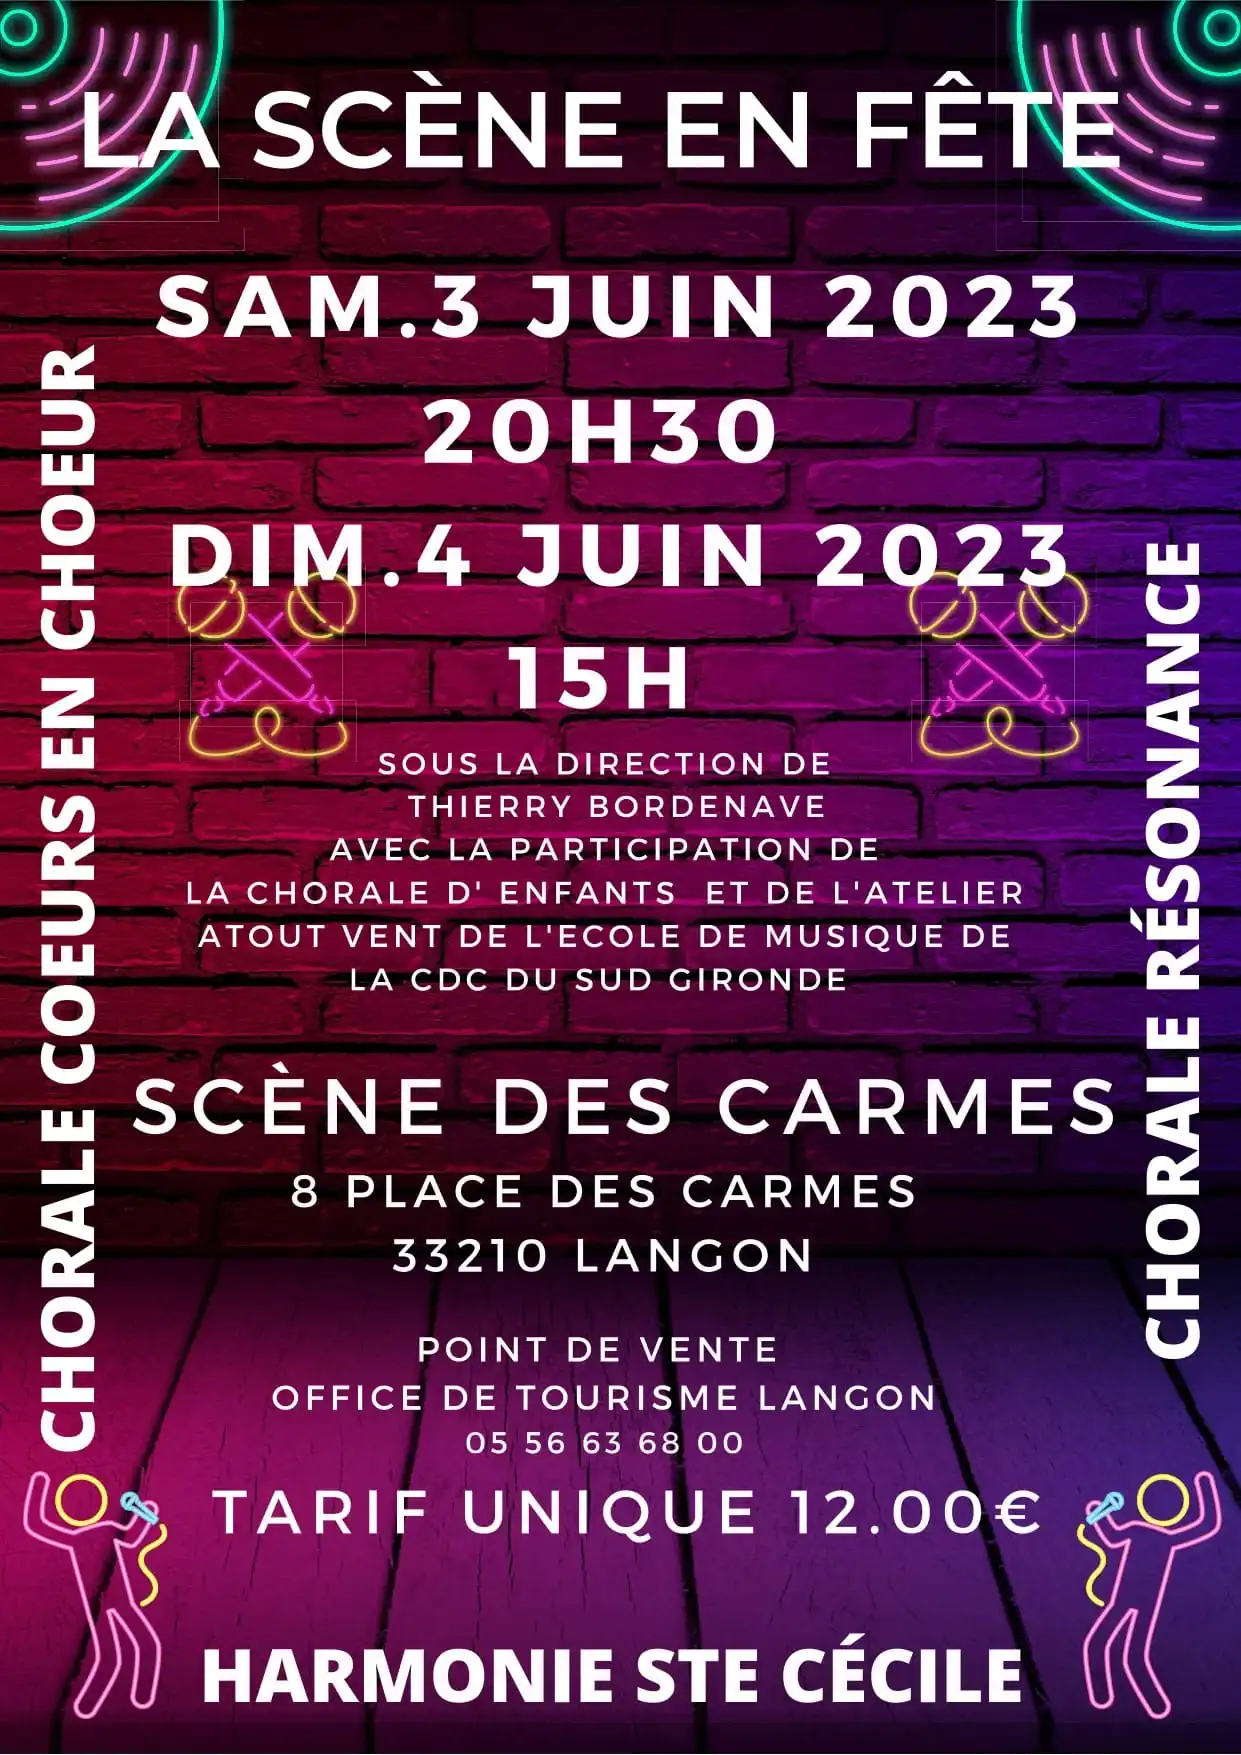 Flyer des concerts La Scène en Fête en juin 2023 au Centre Culturel des Carmes de Langon.